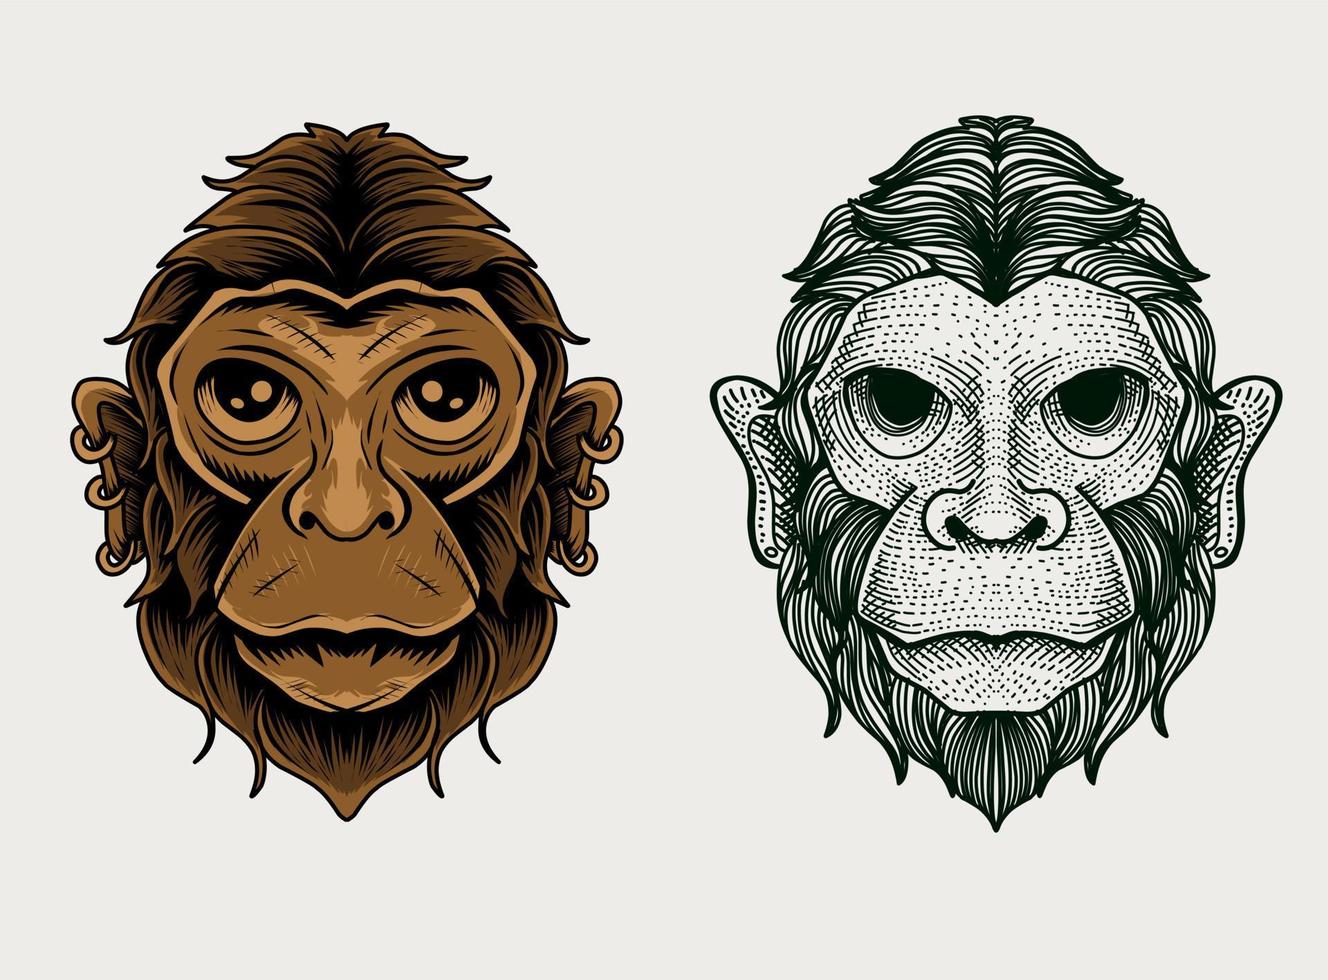 definir o estilo de gravura da cabeça do macaco - ilustração vetorial vetor